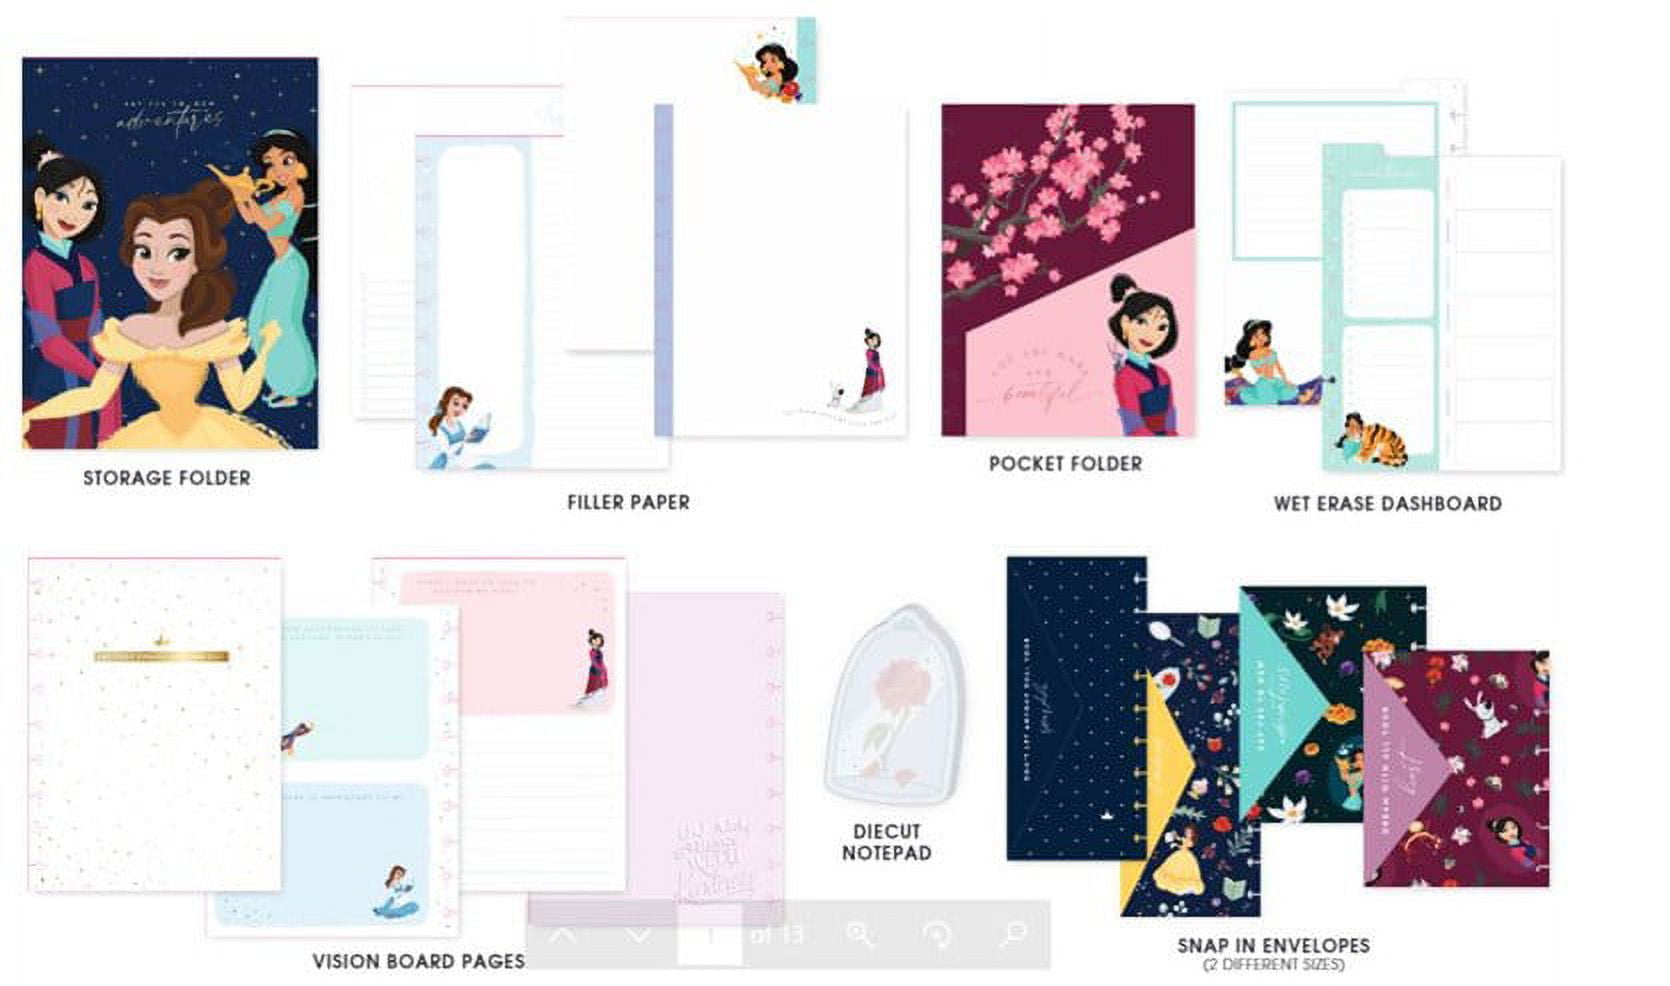 Disney © Princess Elegance Storage Box Kit - 3 Pack  The happy planner,  Sticker storage, Planner accessories